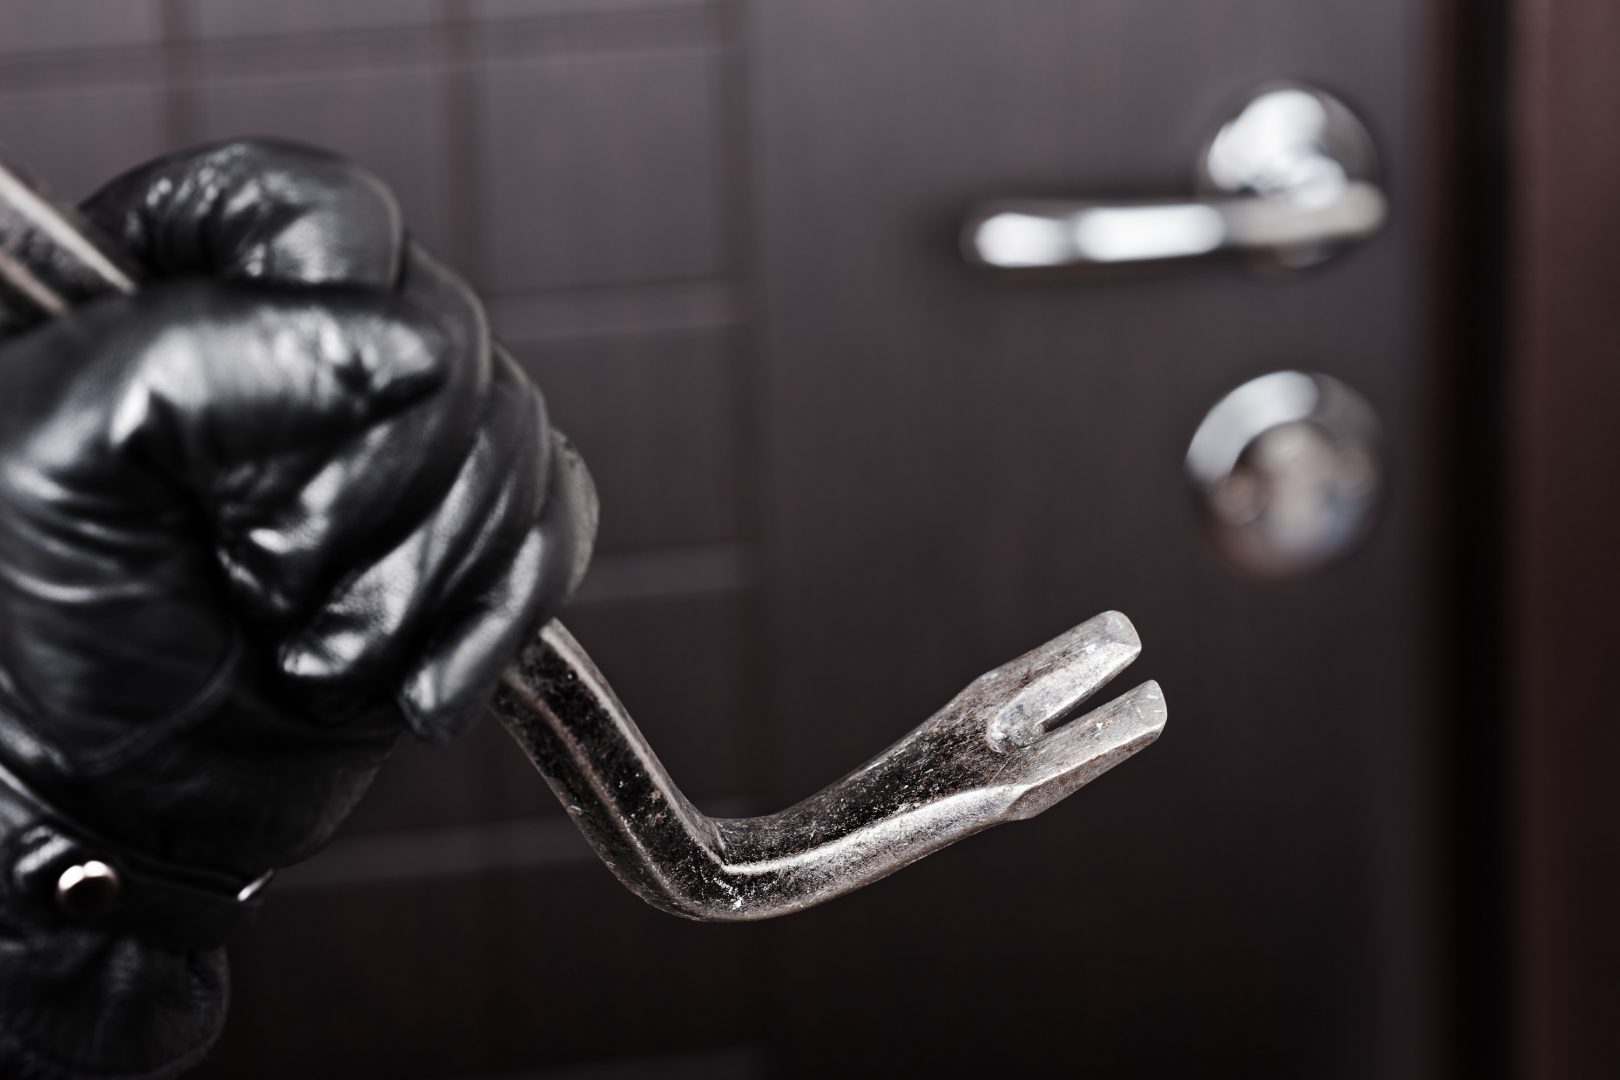 Πως οι διαρρήκτες μπορούν να παραβιάσουν την κλειδαριά σε μια πόρτα ακόμα και εάν είναι ασφαλείας